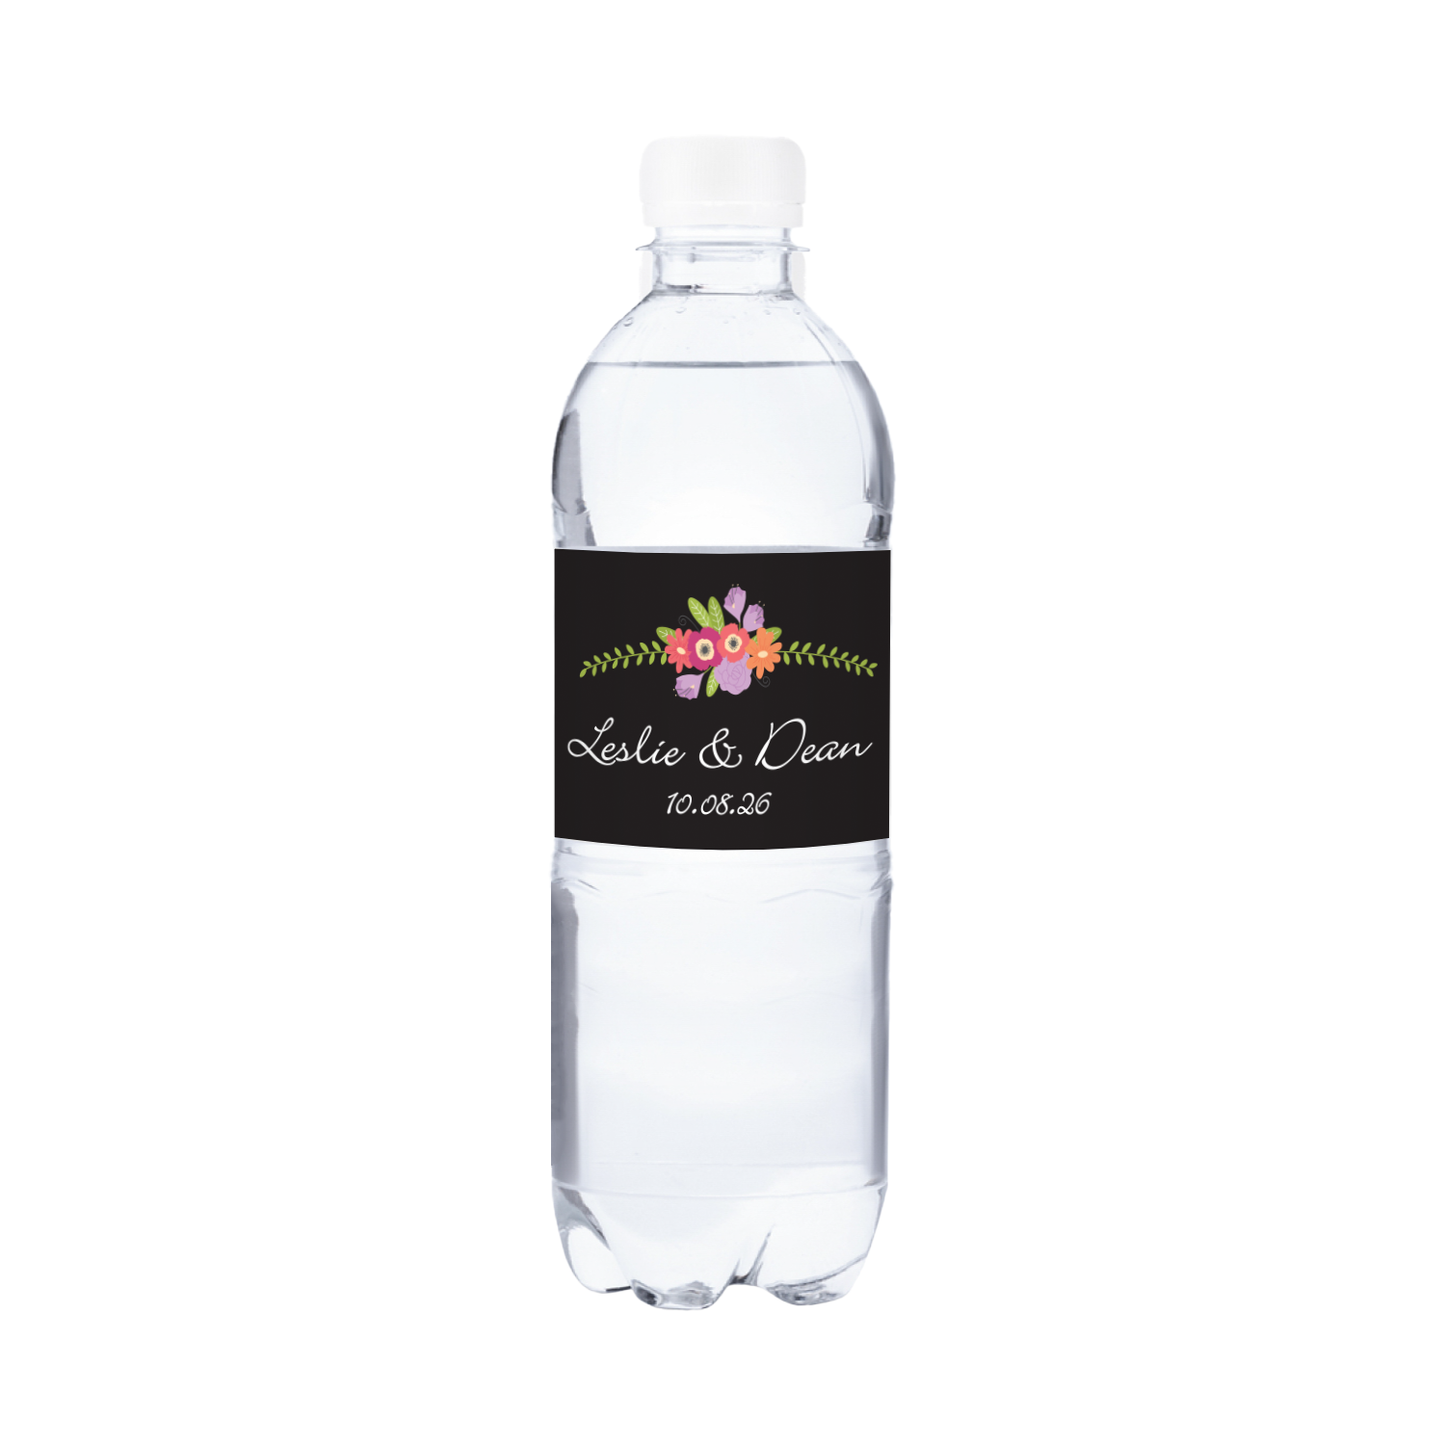 Flowers Wedding Waterproof Personalized Water Bottle Labels (set of 15)